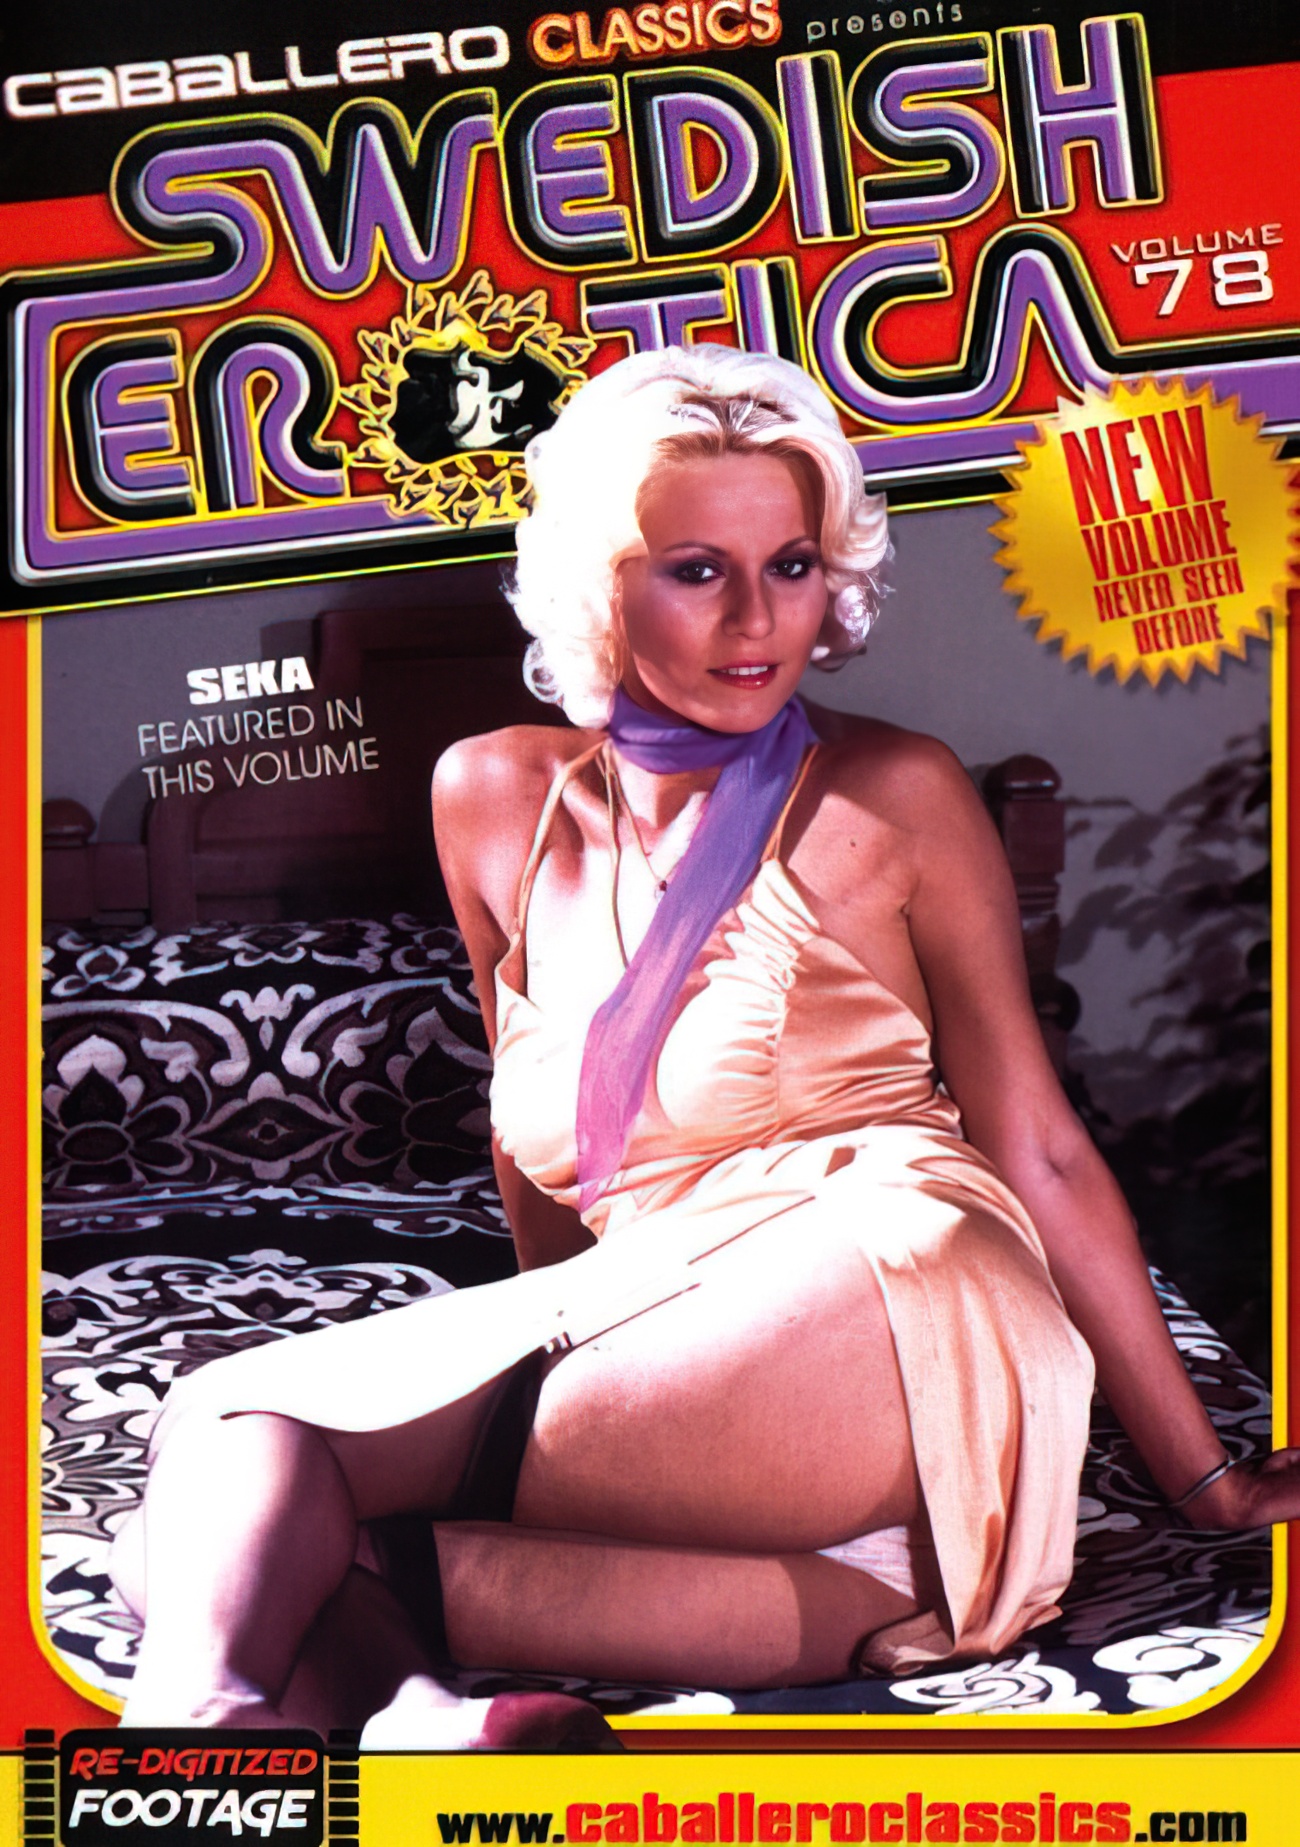 Swedish Erotica #78 - Seka [720p-4000] UPSCALED ENHANCED